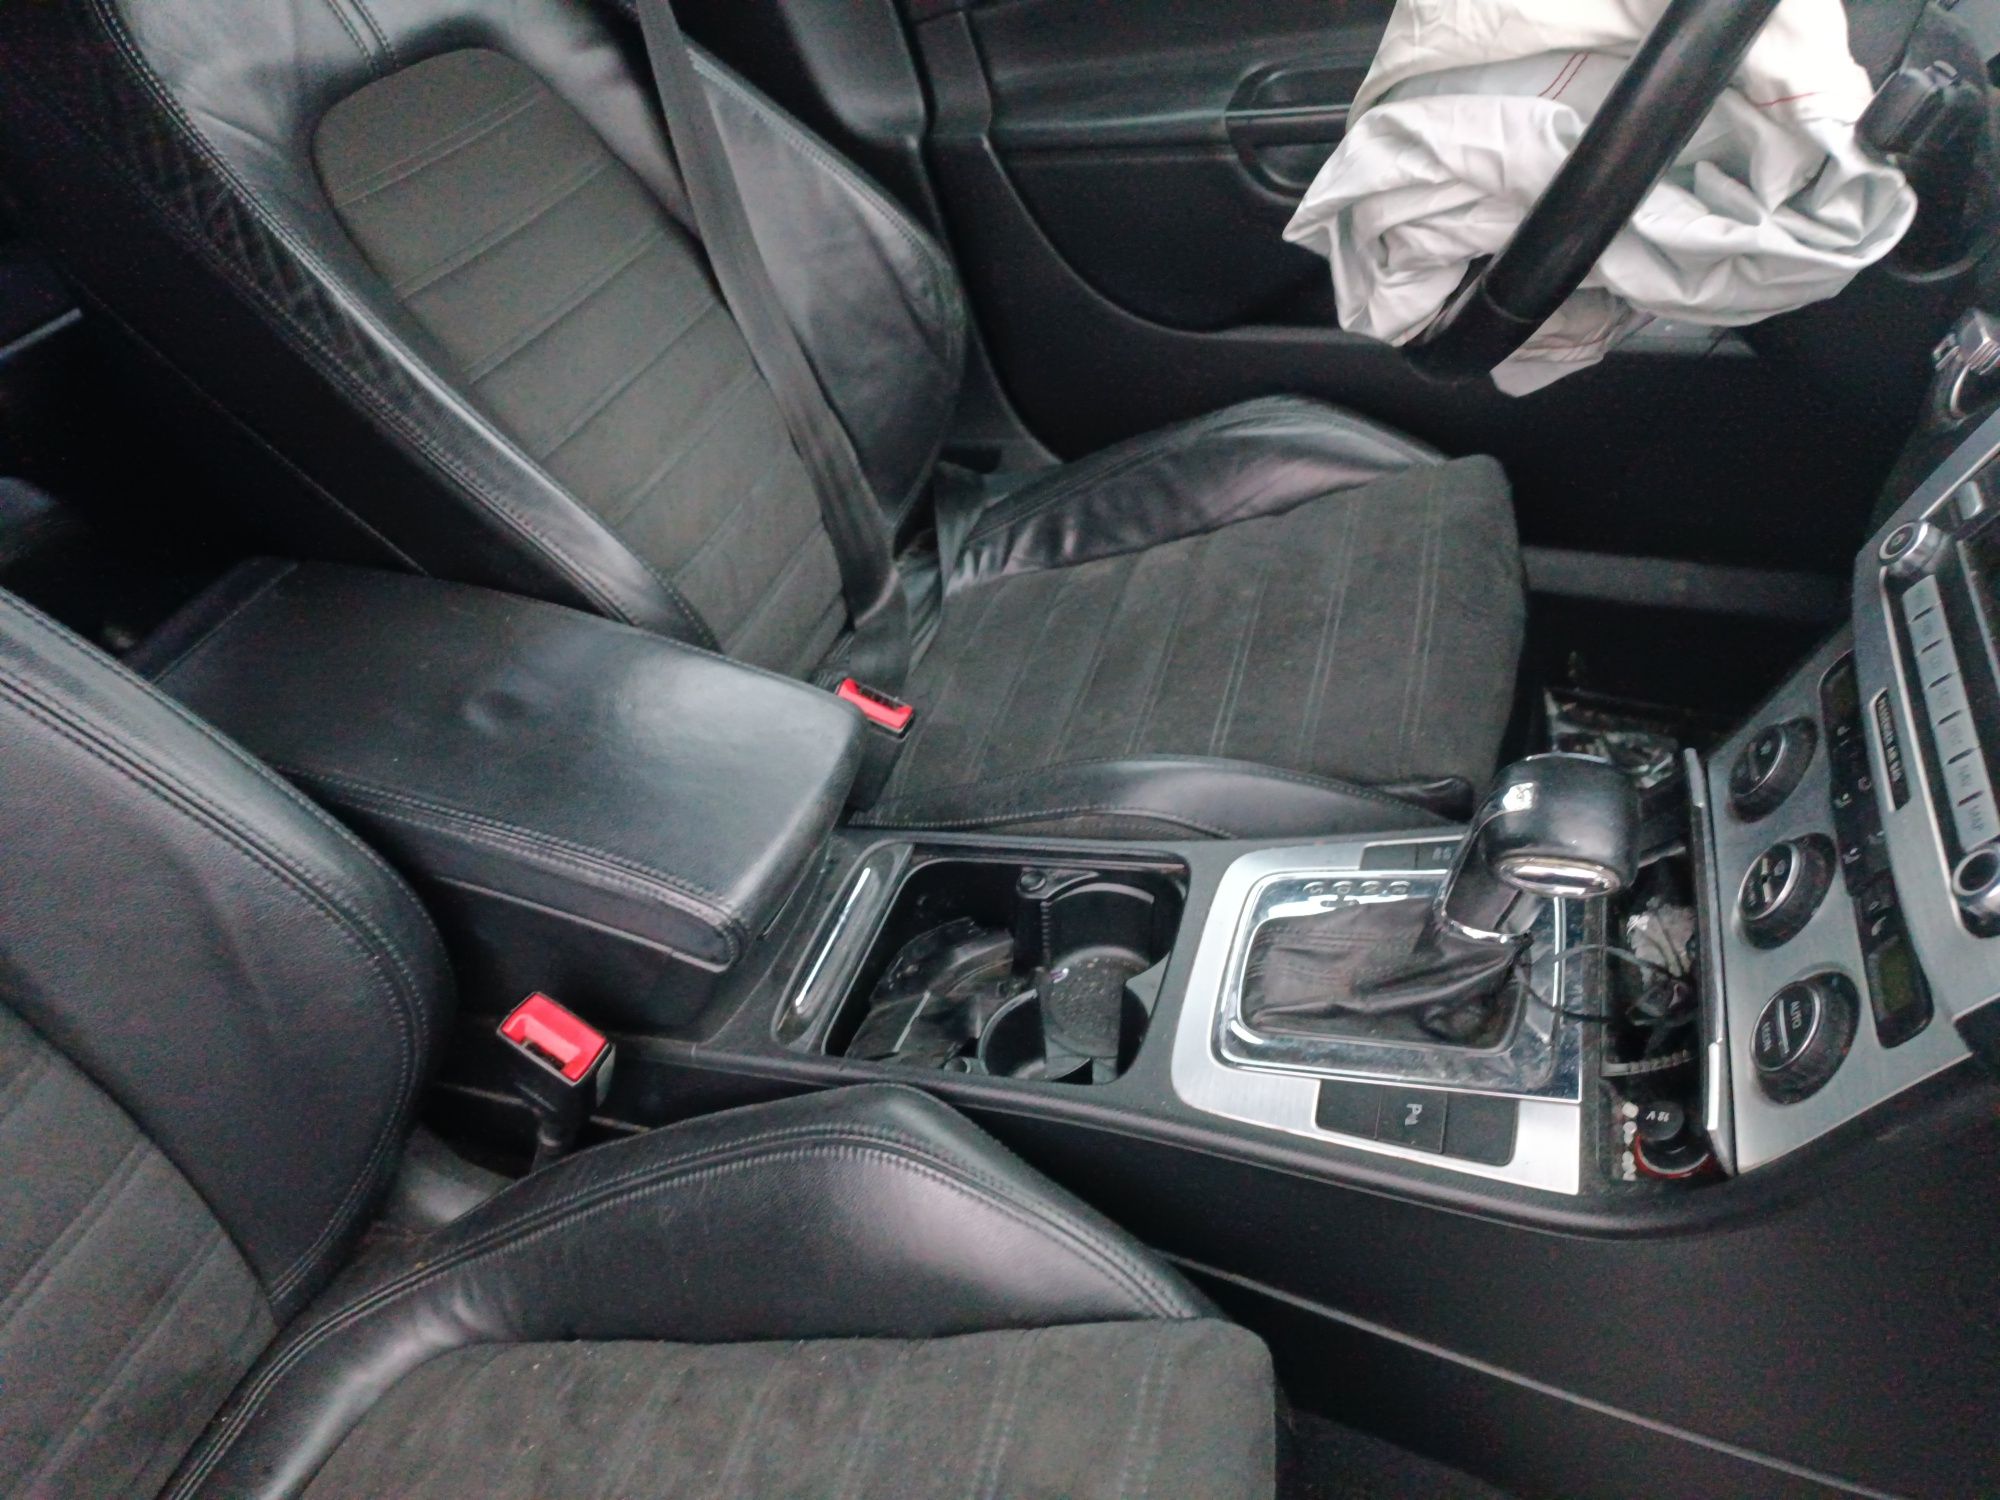 VW Passat B6 kombi fotele skórzane podłokietnik Alcantara skóry